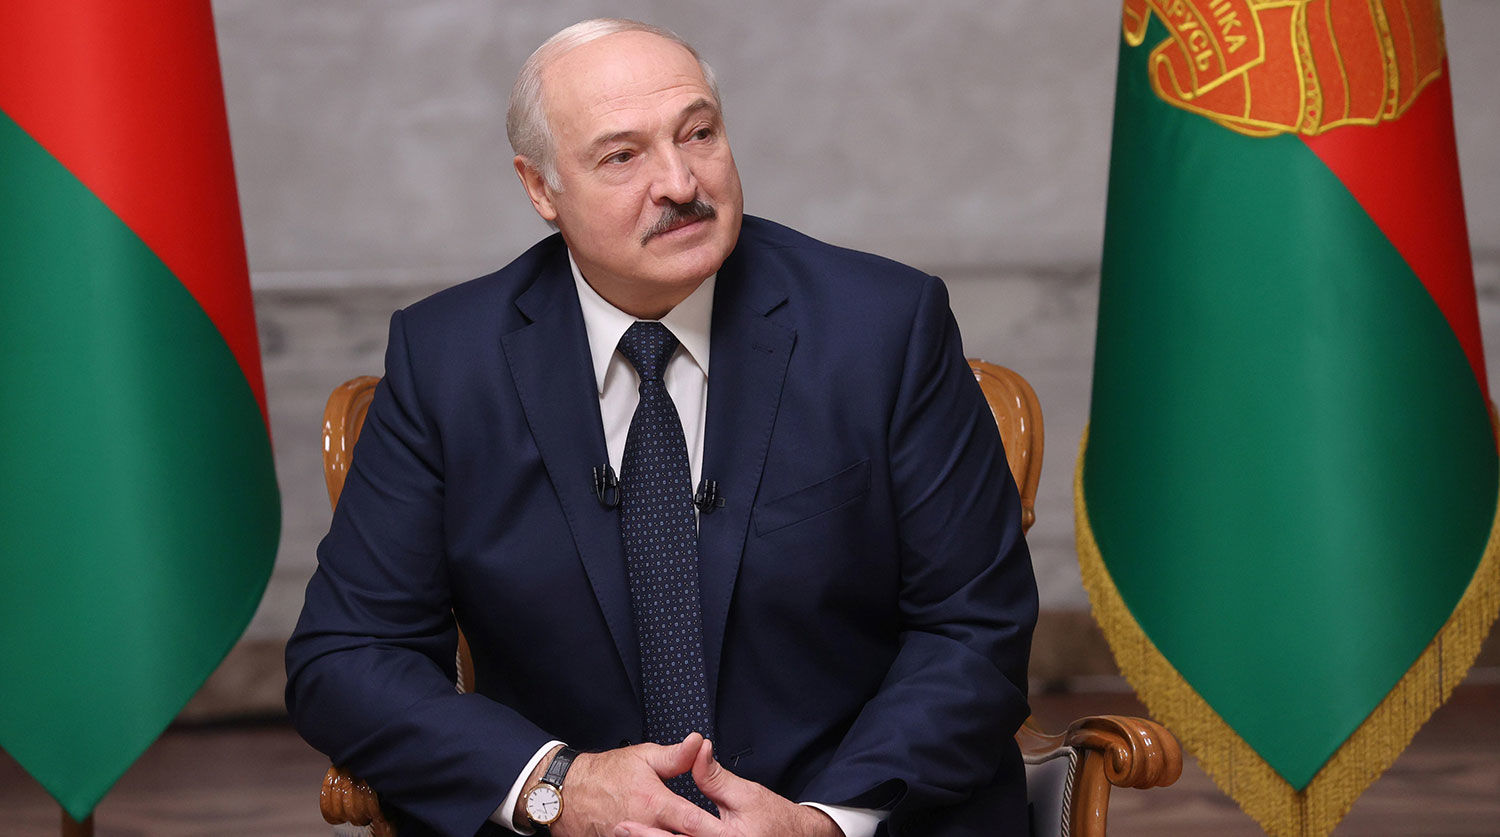 Лукашенко о Тихановской: "Тот, кто взялся за революцию, пусть идет до конца"